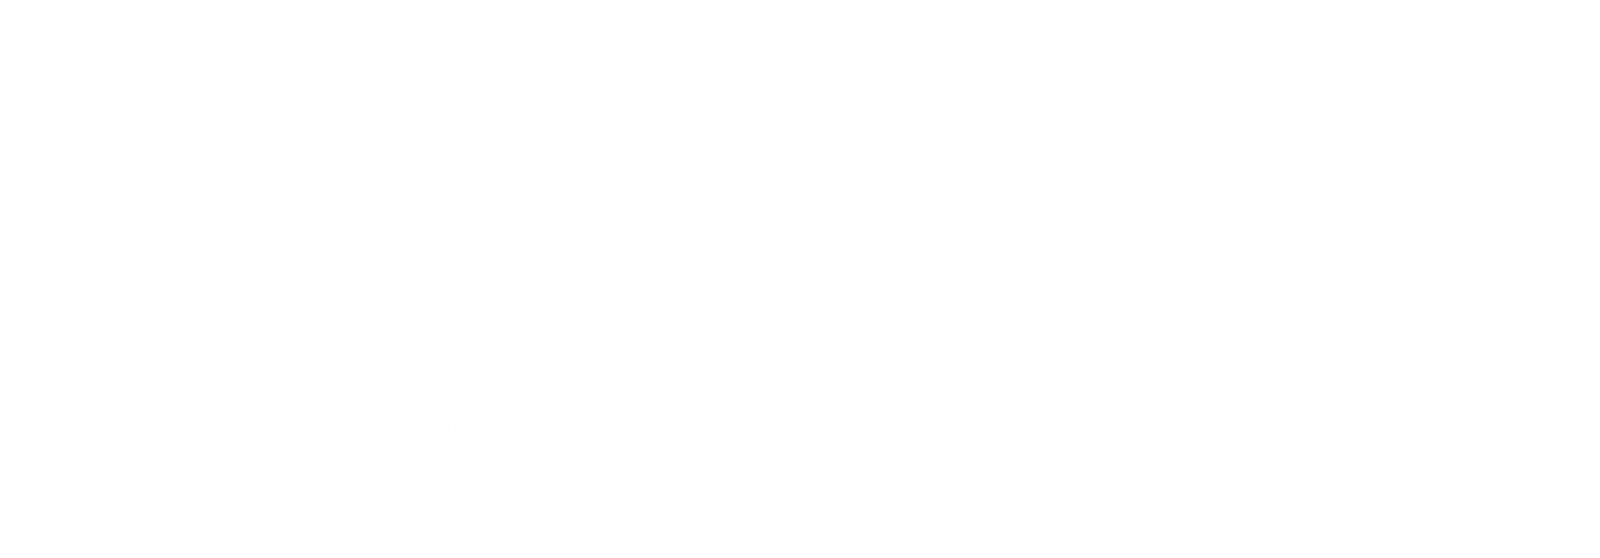 المركز المتخصص الشامل لصيانة السيارات في الرياض